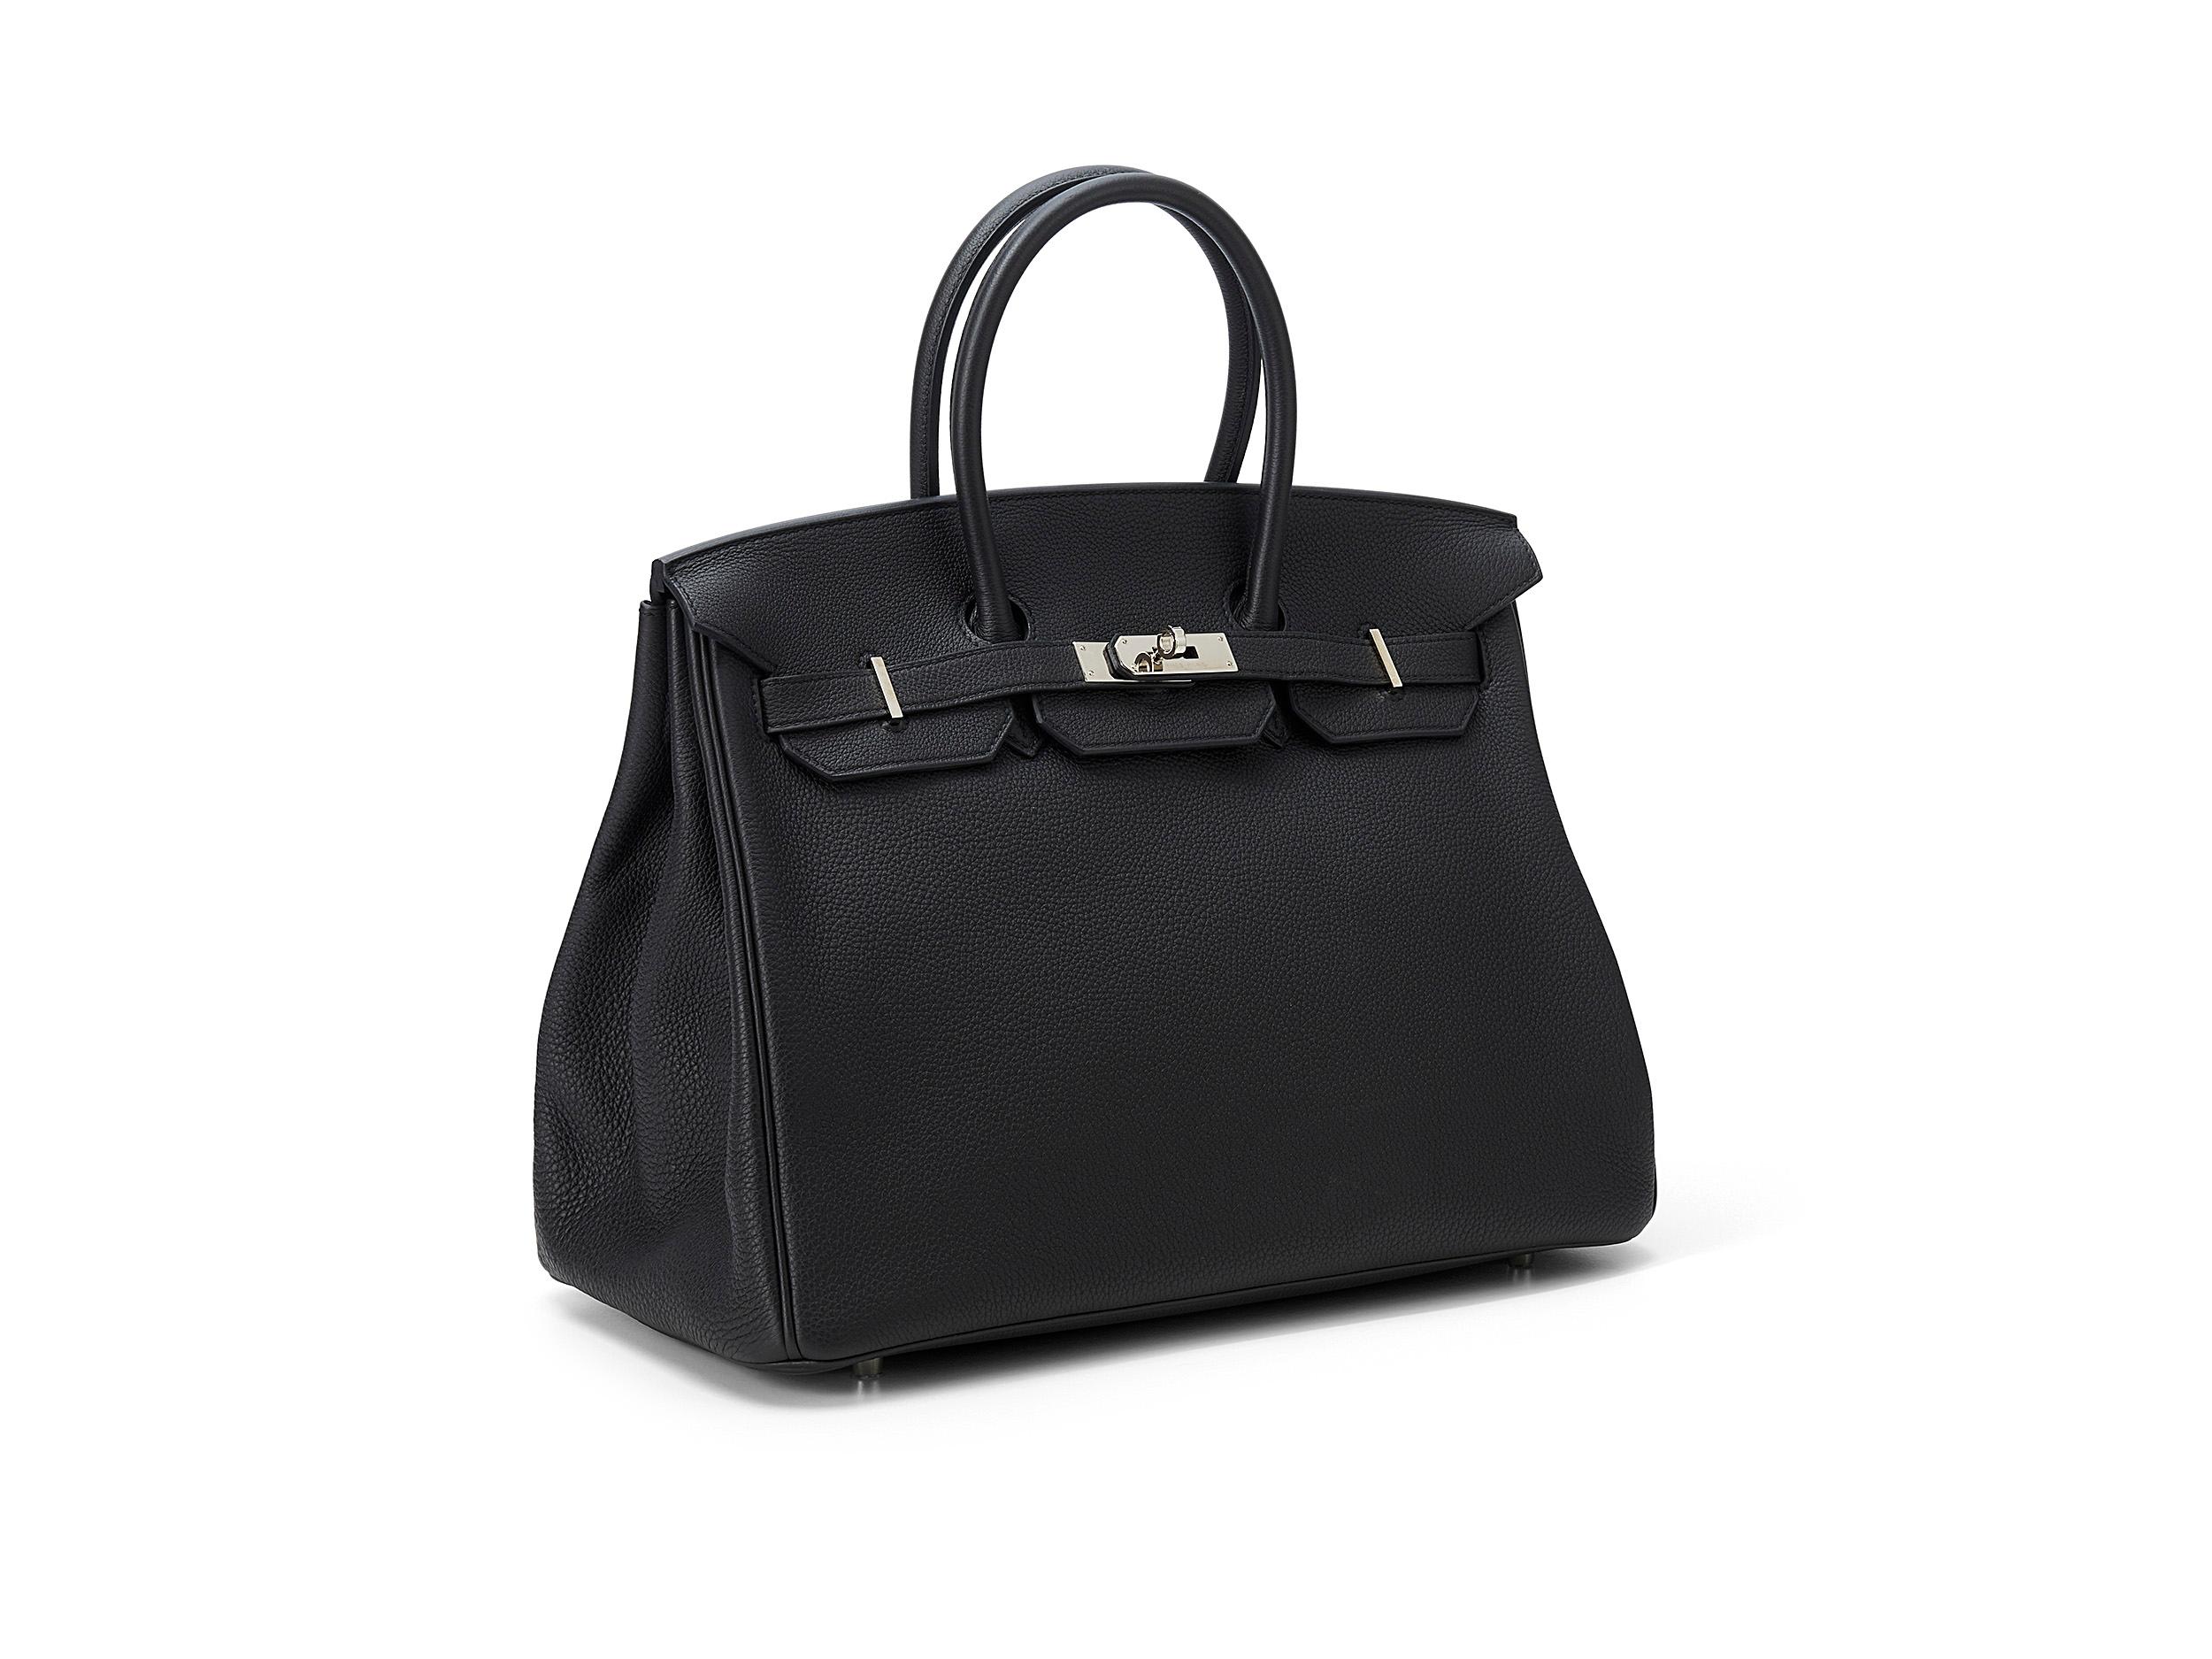 Birkin 35 d'Hermès en cuir noir et togo, orné de ferrures en palladium. Le sac est en bon état, la quincaillerie et la serrure présentent des rayures et des décolorations. Livré en kit complet avec le ticket de caisse d'origine. Timbre A (2017) 

